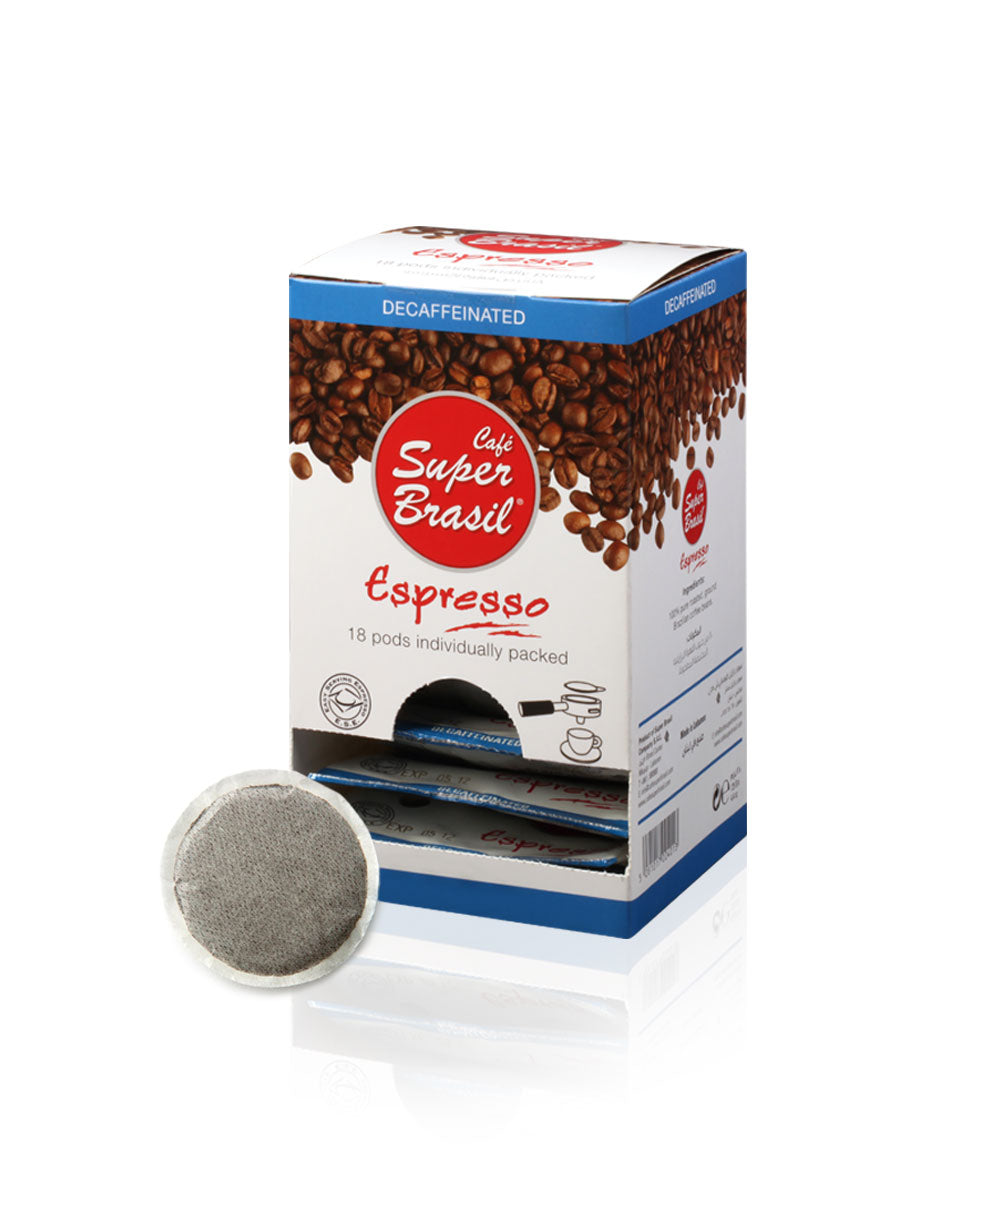 Café Super Brasil Espresso POD (Decaffeinated)